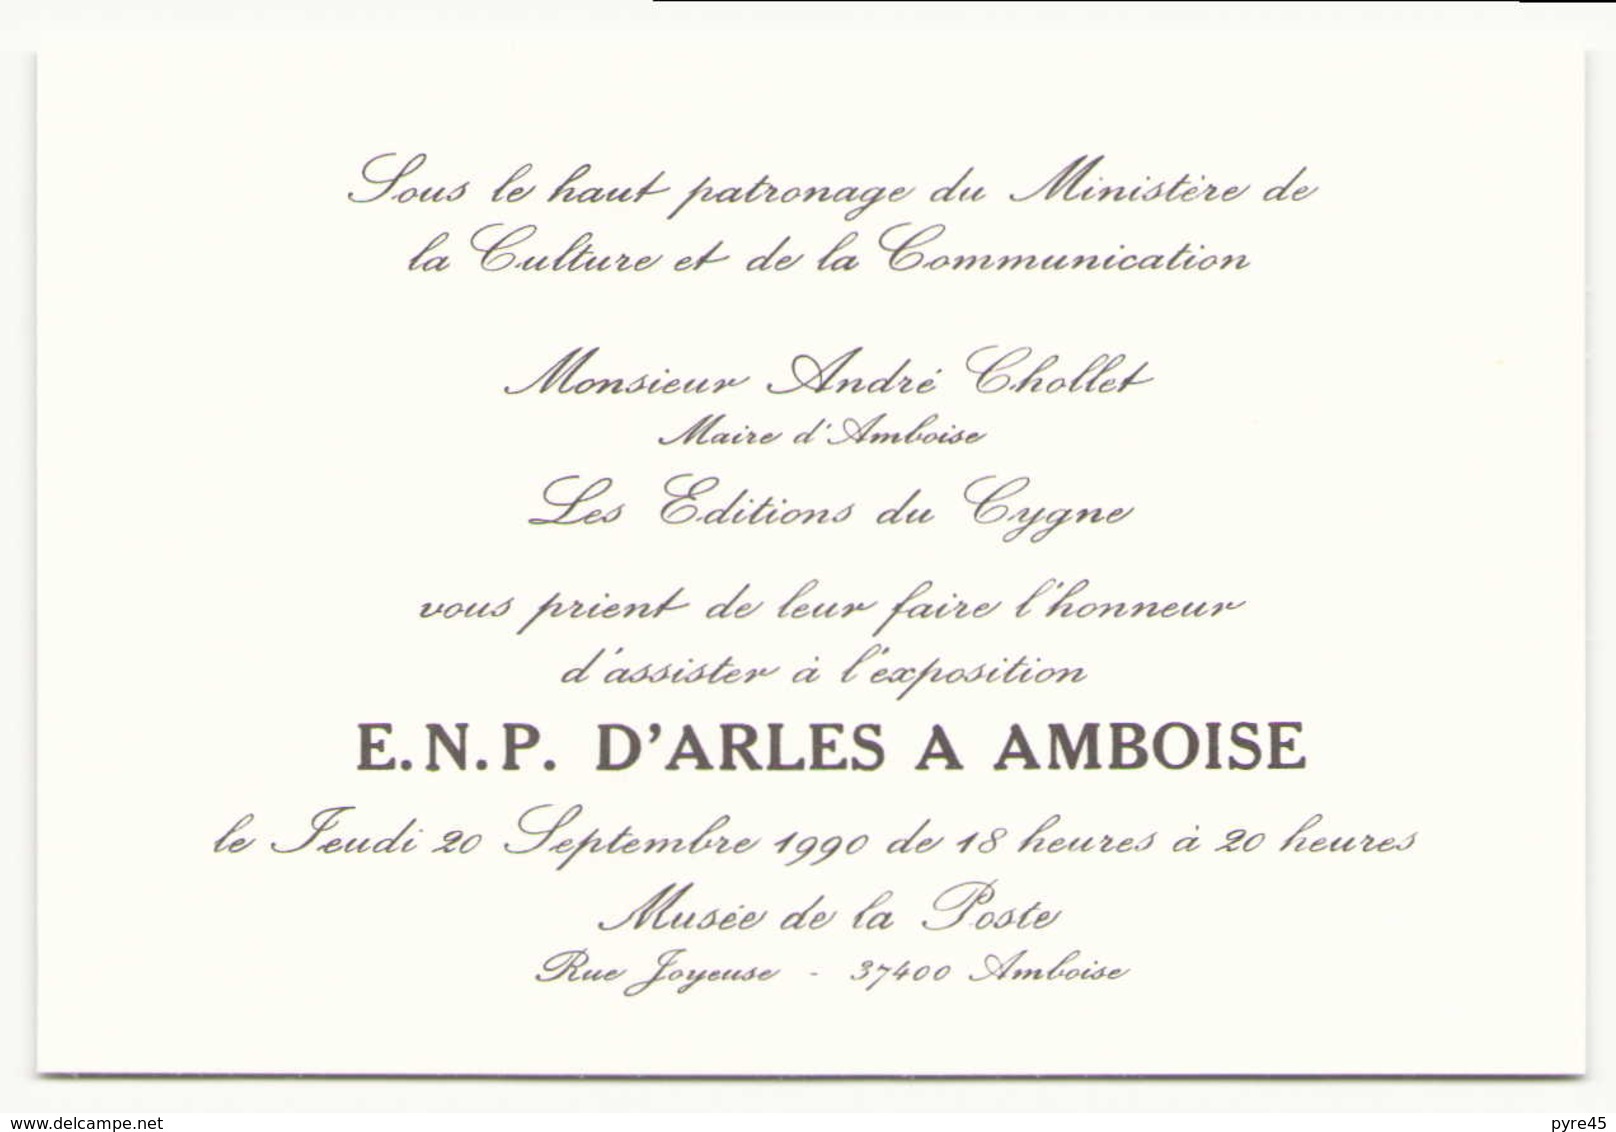 Vignettes exposition E.N.P d'Arles à Amboise septembre 1990